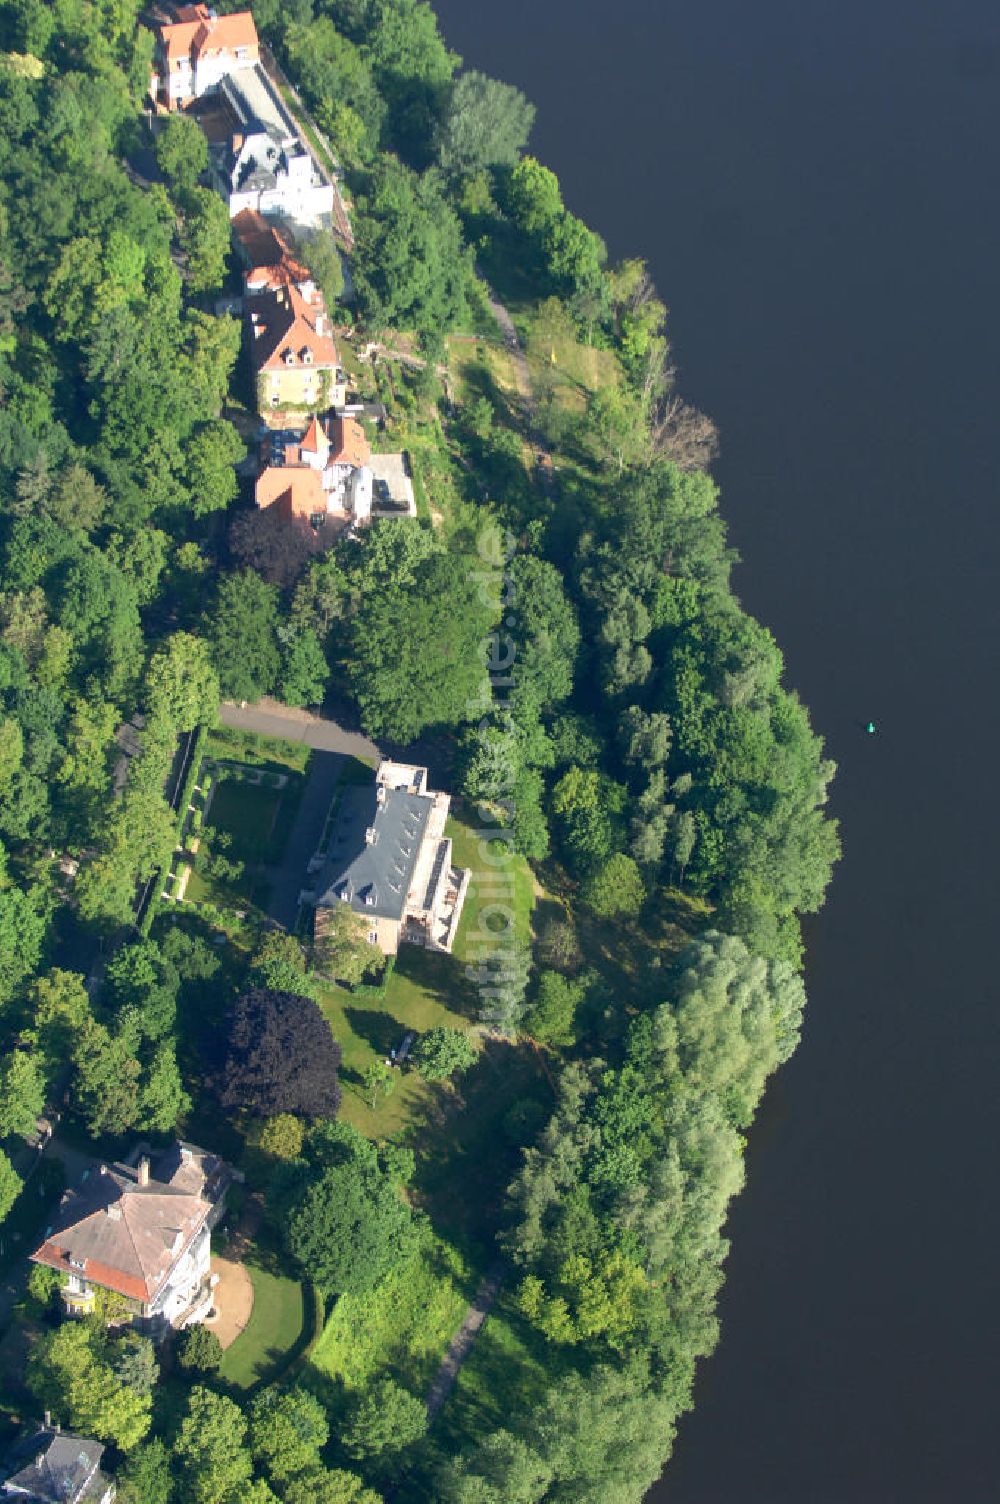 Potsdam - Babelsberg aus der Vogelperspektive: Blick auf den umstrittenen Uferweg am Griebnitzsee in Potsdam - Babelsberg